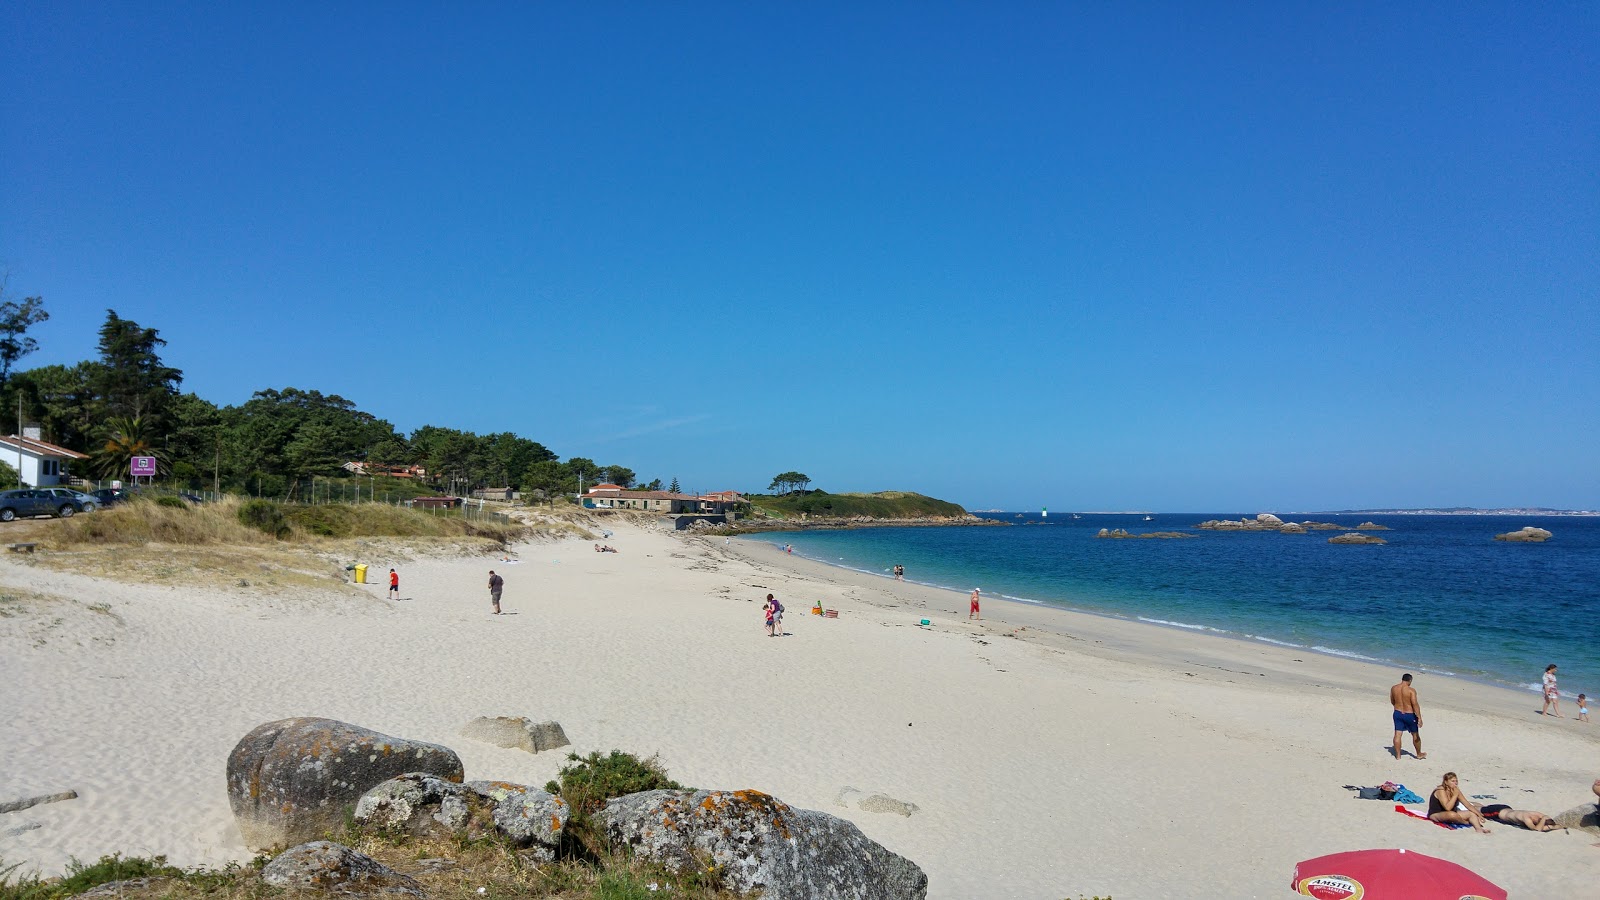 Fotografie cu Carreiro beach cu o suprafață de nisip alb